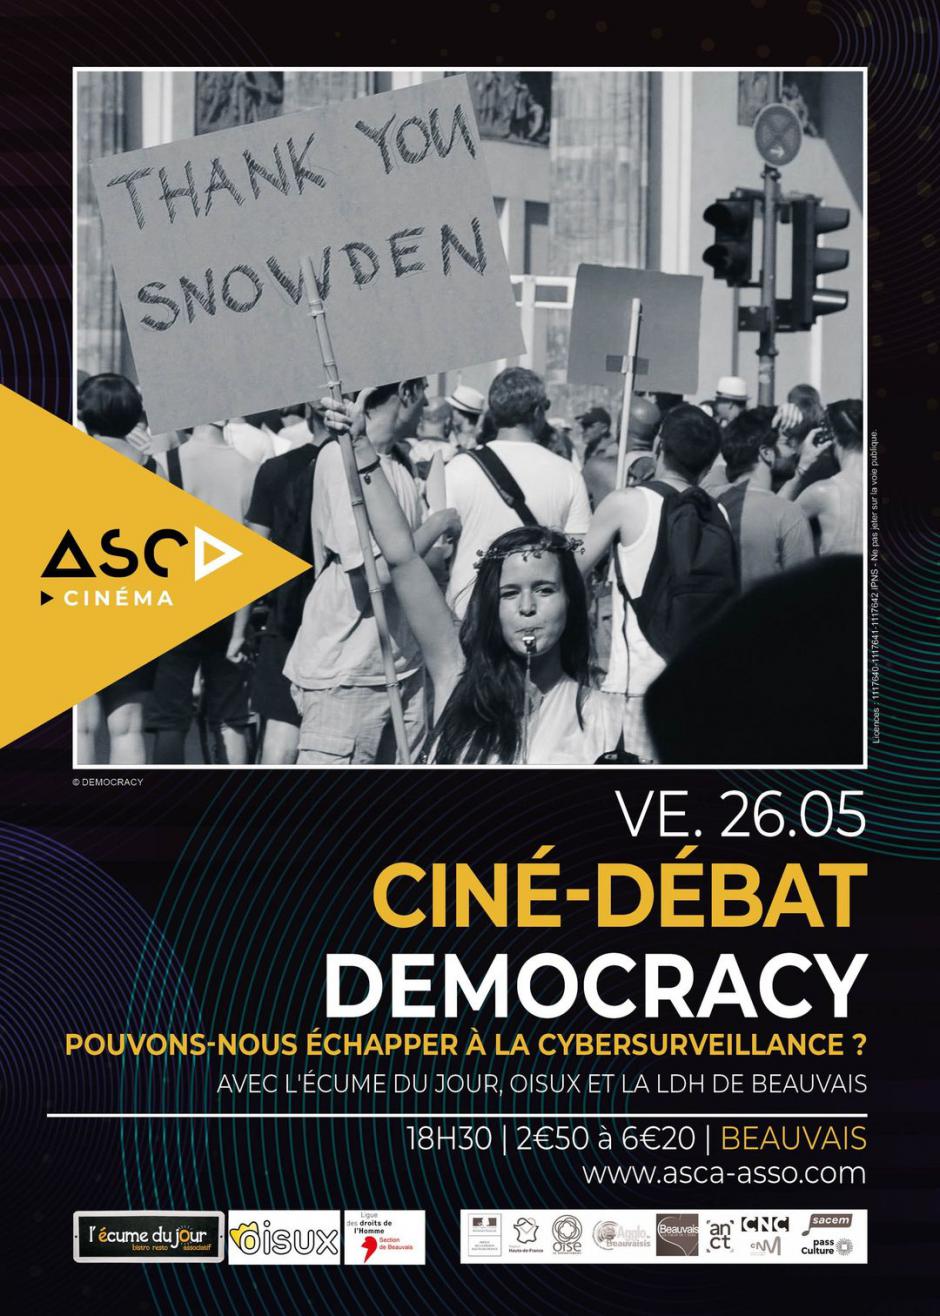 26 mai, Beauvais - L'Écume du jour, Oisux, LDH Beauvais-Ciné-débat « Democracy », sur la cybersurveillance